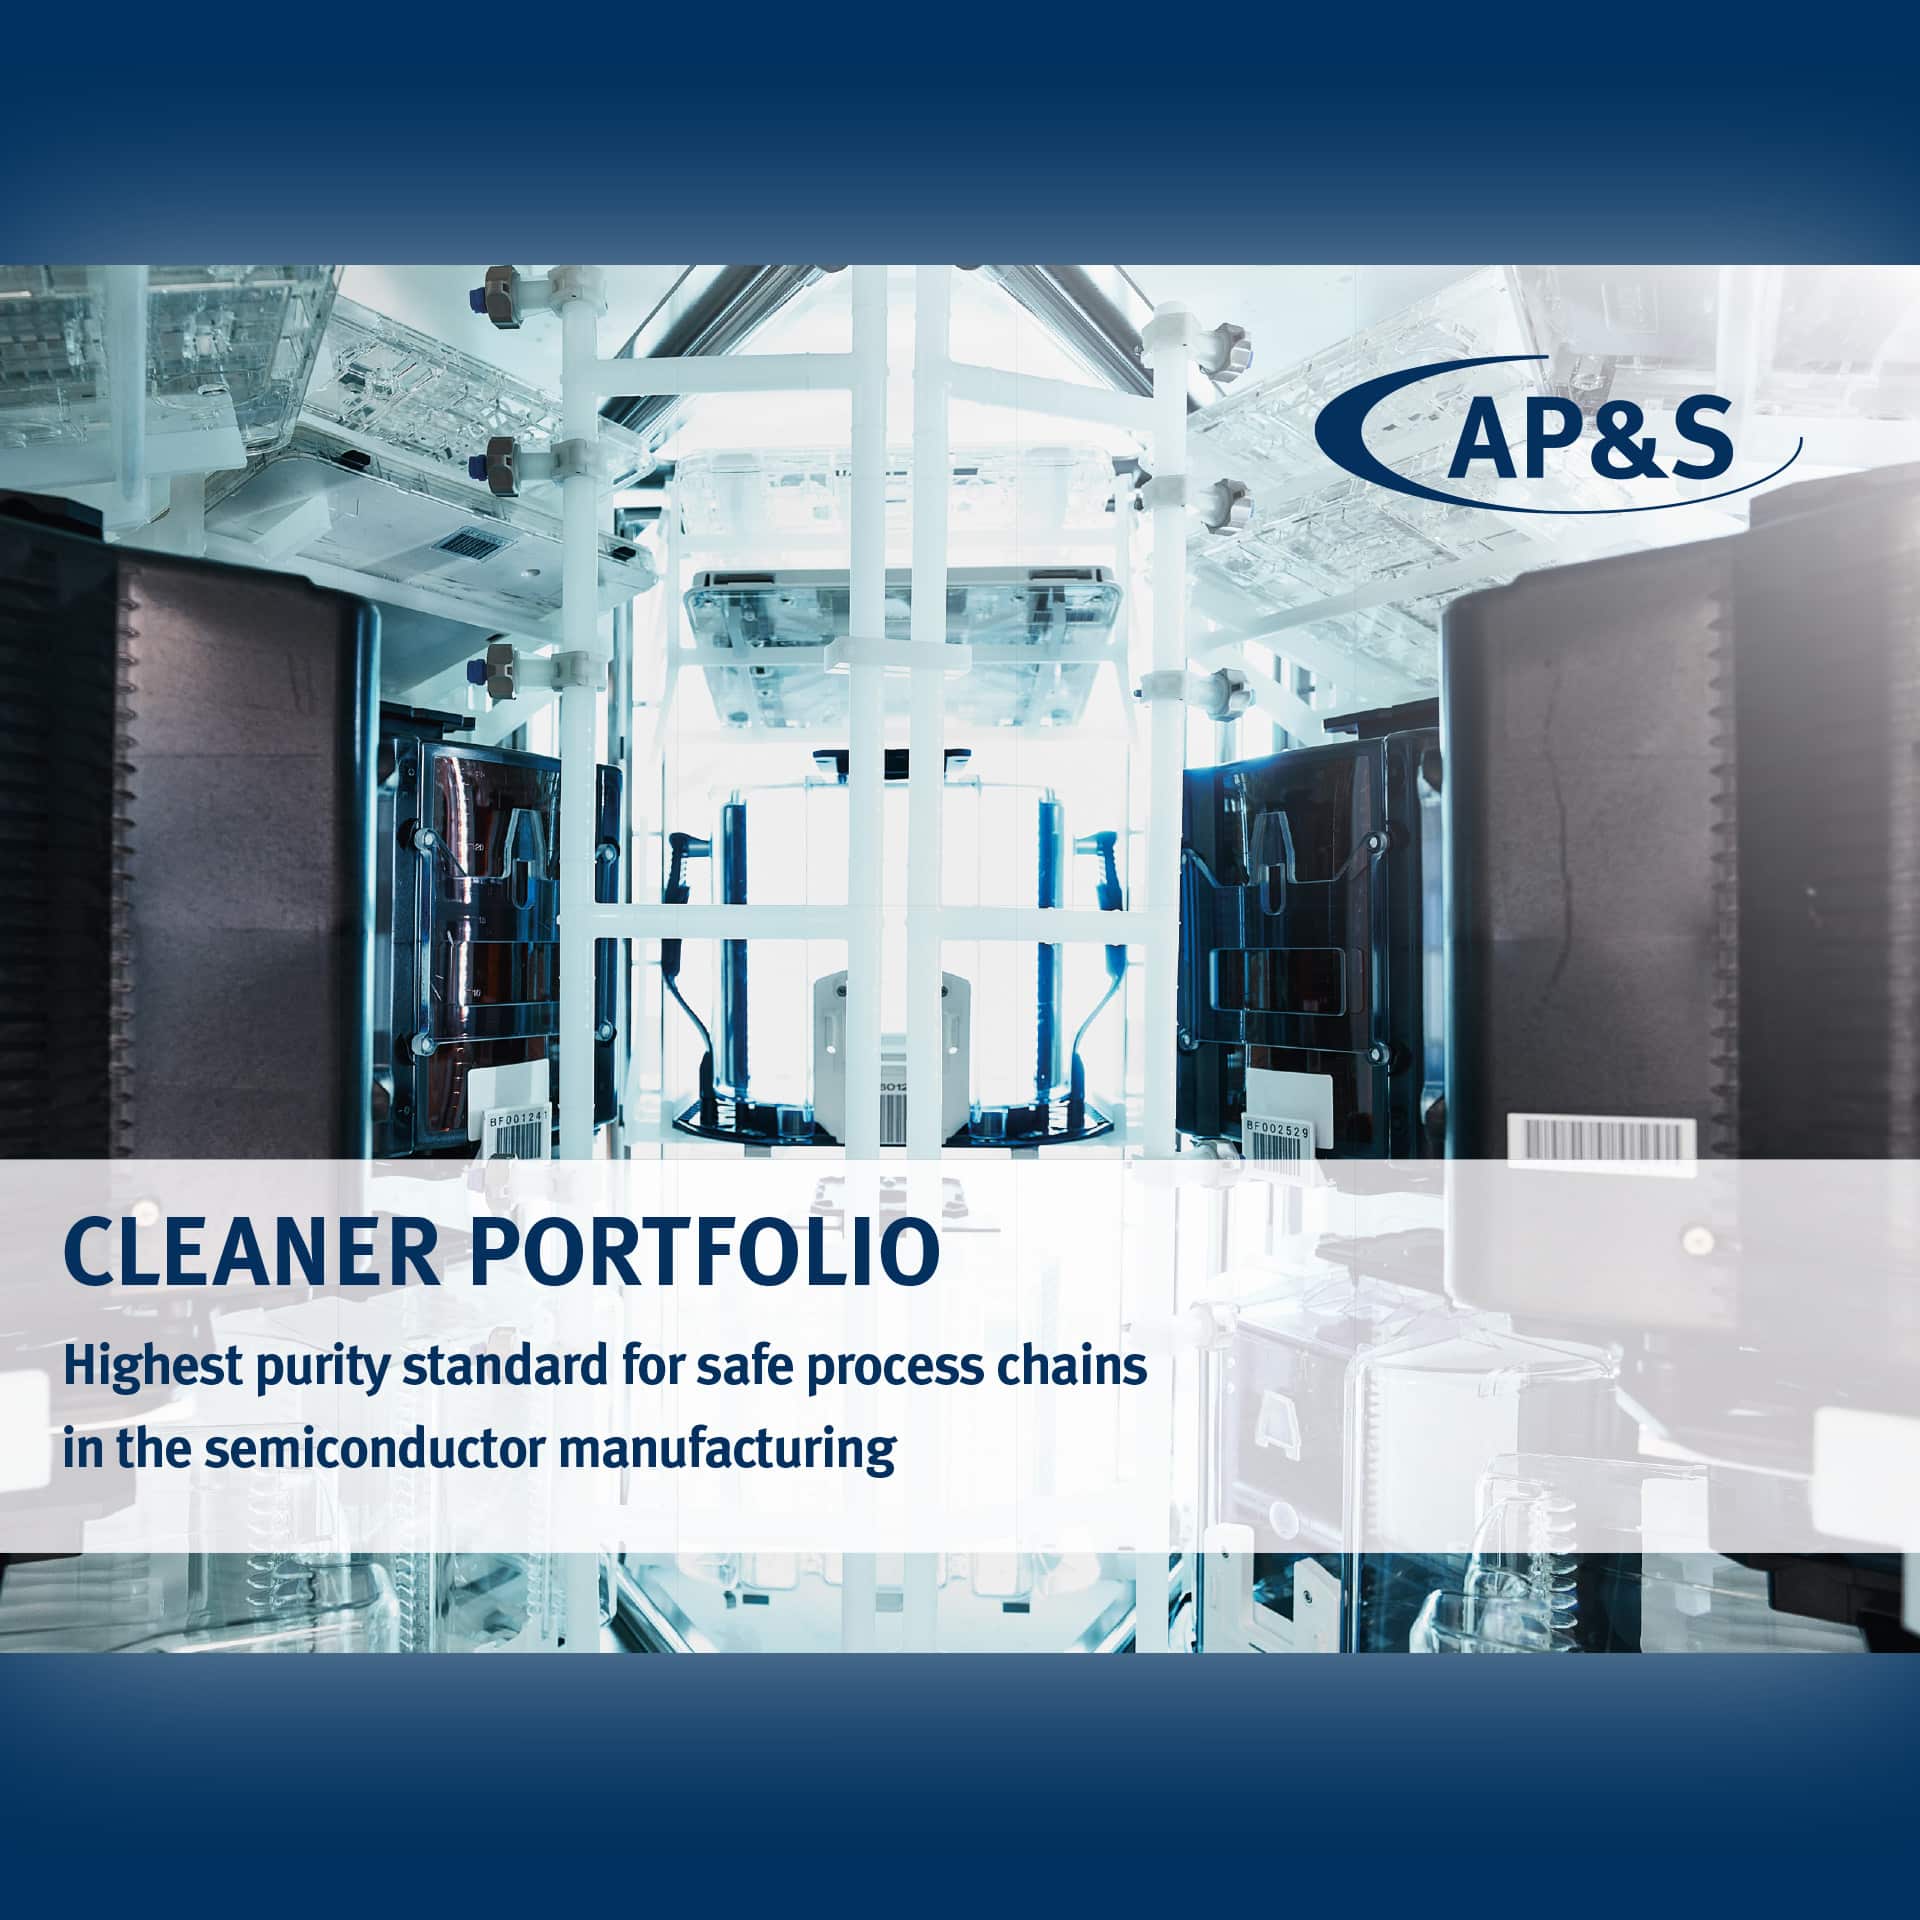 AP&S cleaner portfolio